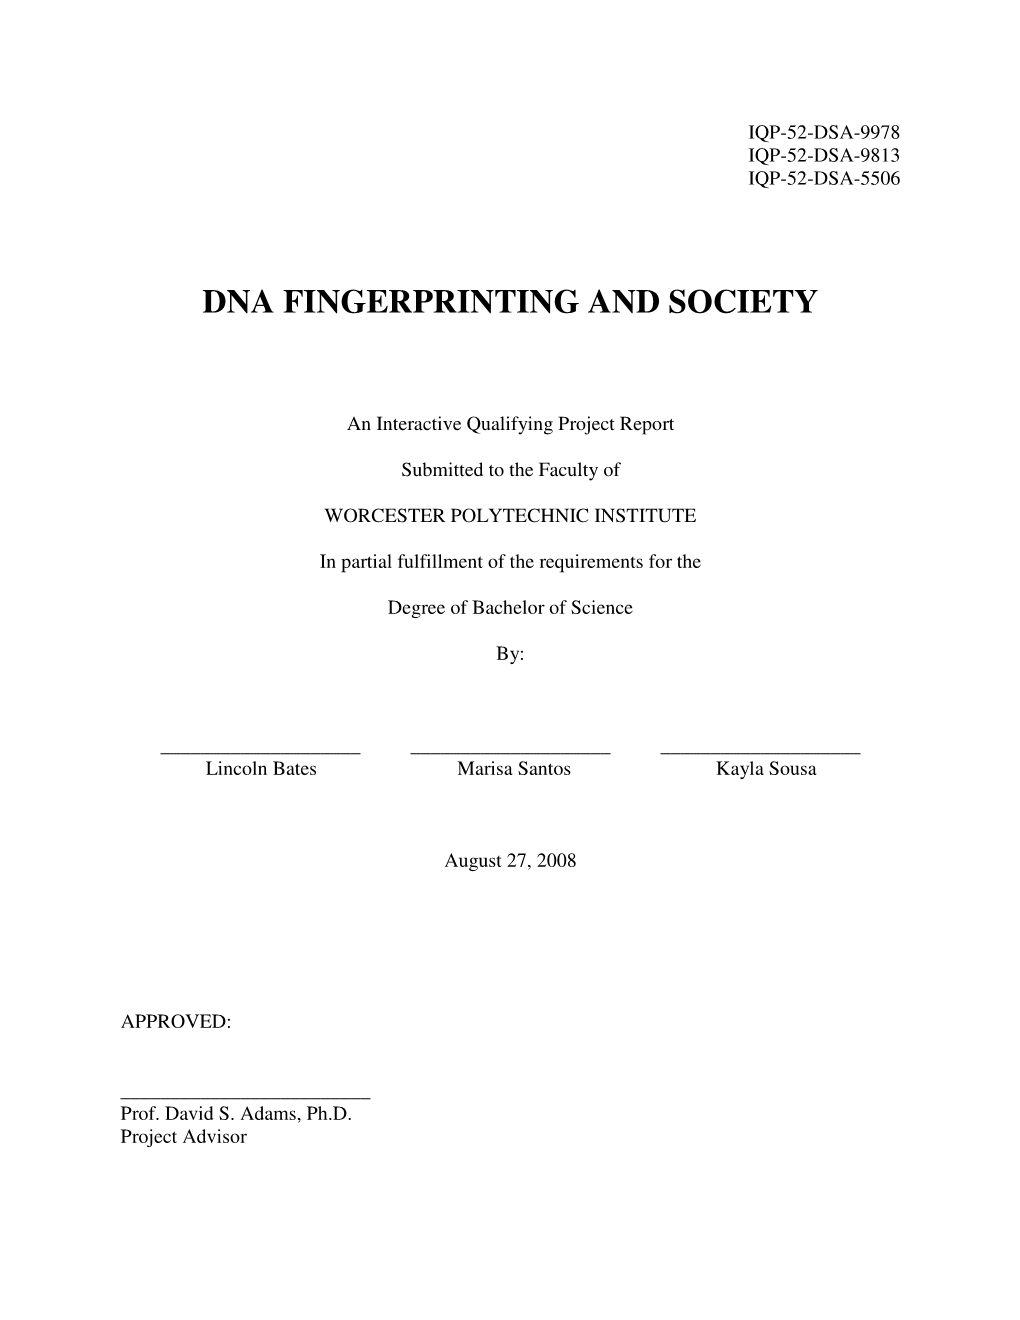 Dna Fingerprinting and Society